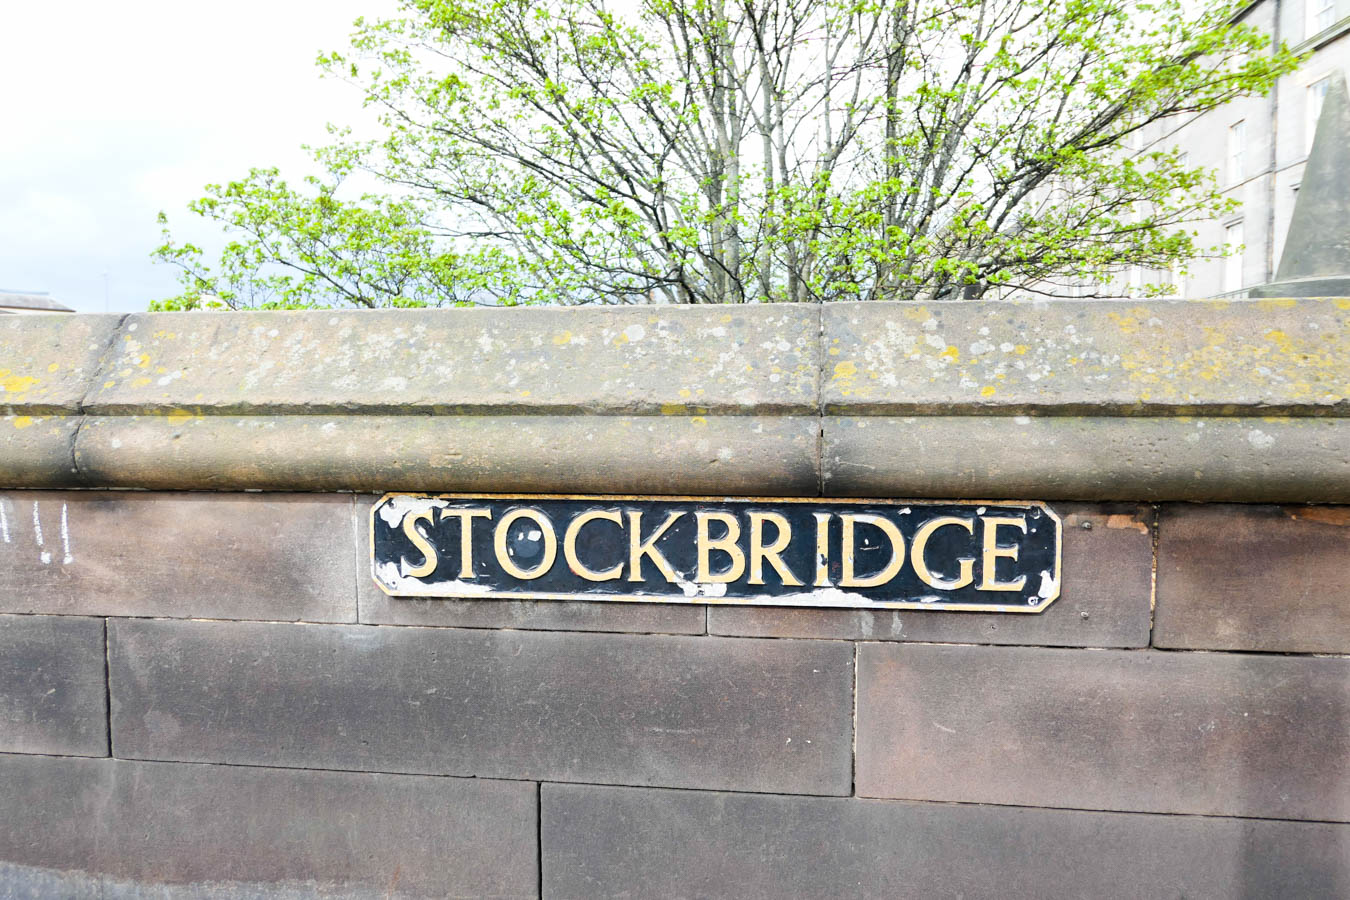 Stockbridge Edinburgh Restaurants Travel Guide